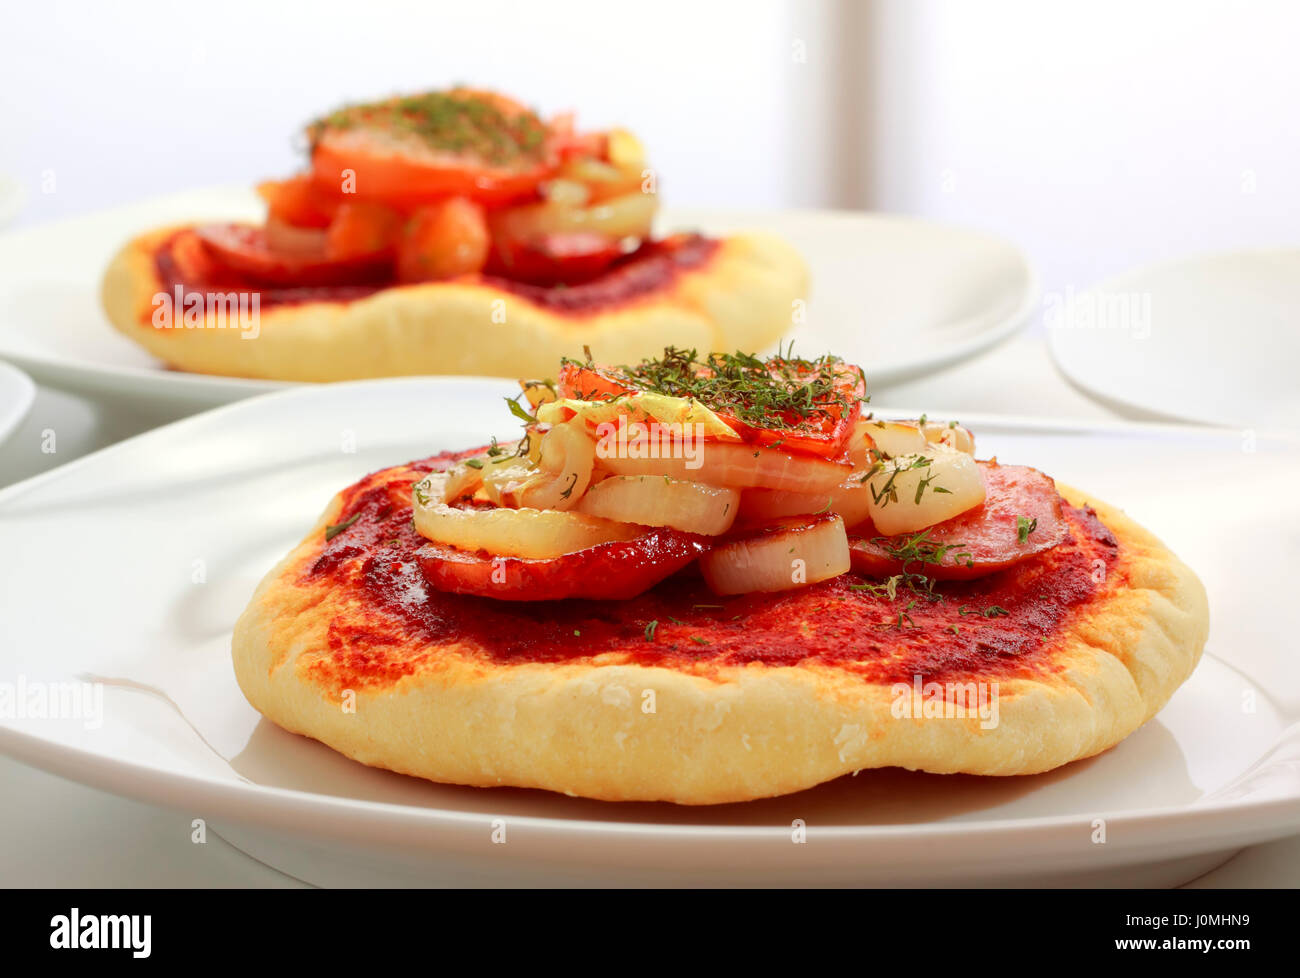 Kleine Pizza (Pizzette) auf Teller mit Wurst, Zwiebeln und Tomaten Scheibe. Unkonzentriert zweite Pizza auf Hintergrund. Stockfoto